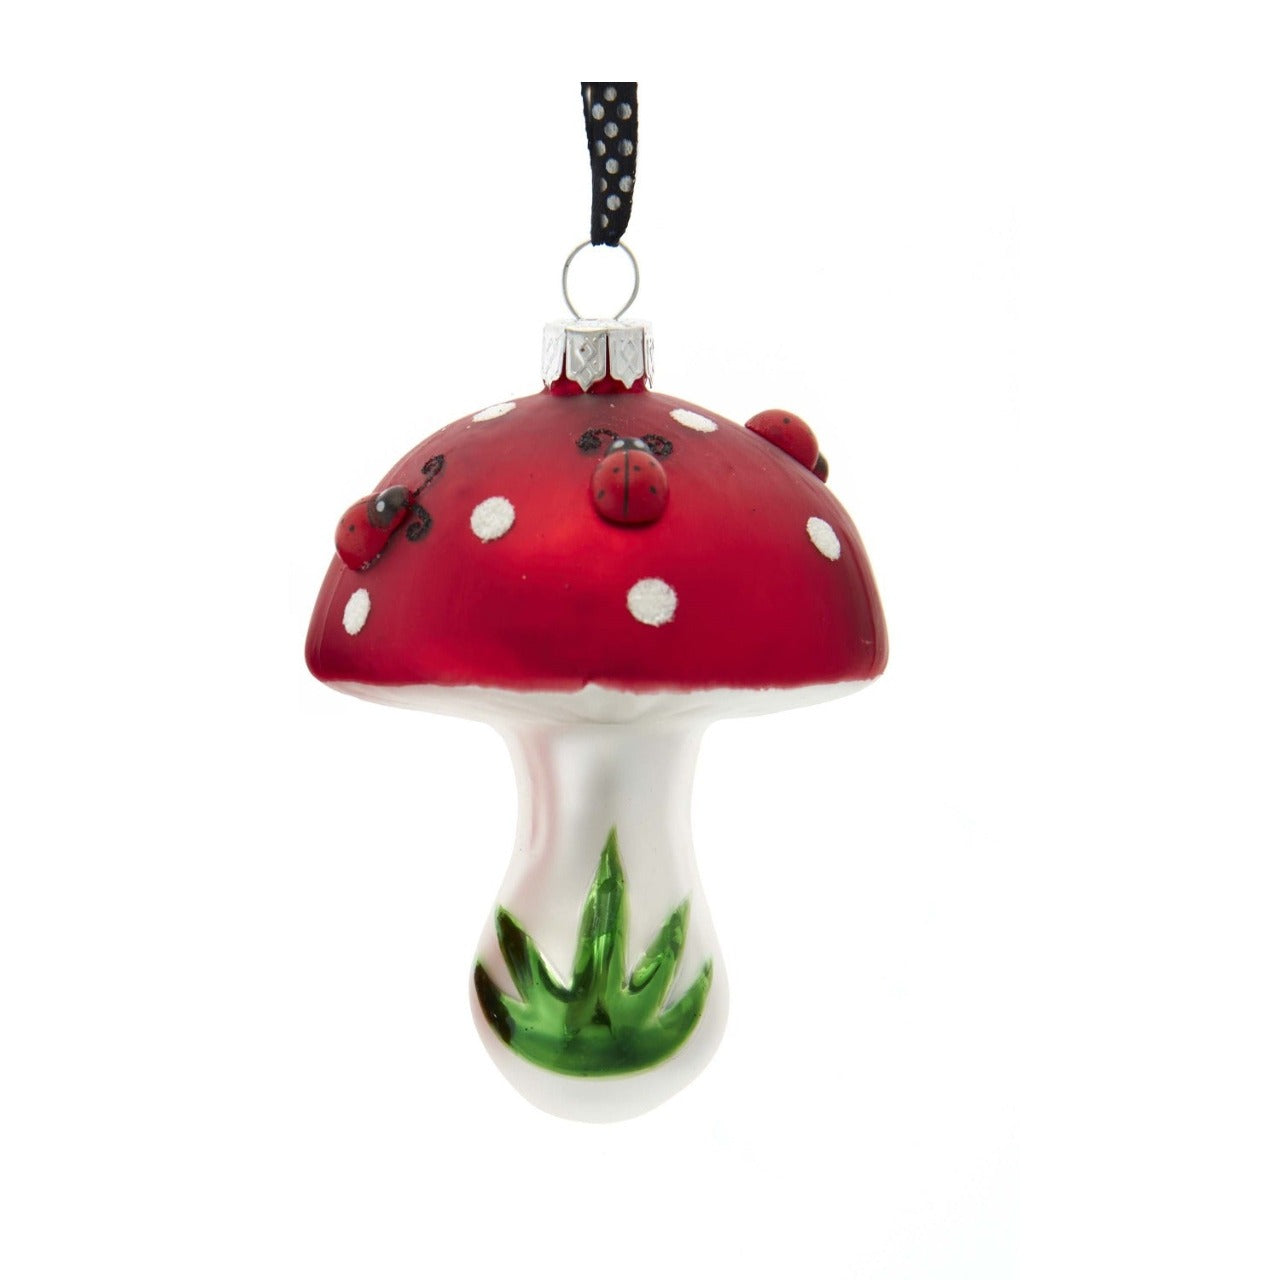 Kurt S Adler Ladybug On Mushroom Christmas Ornaments - Single